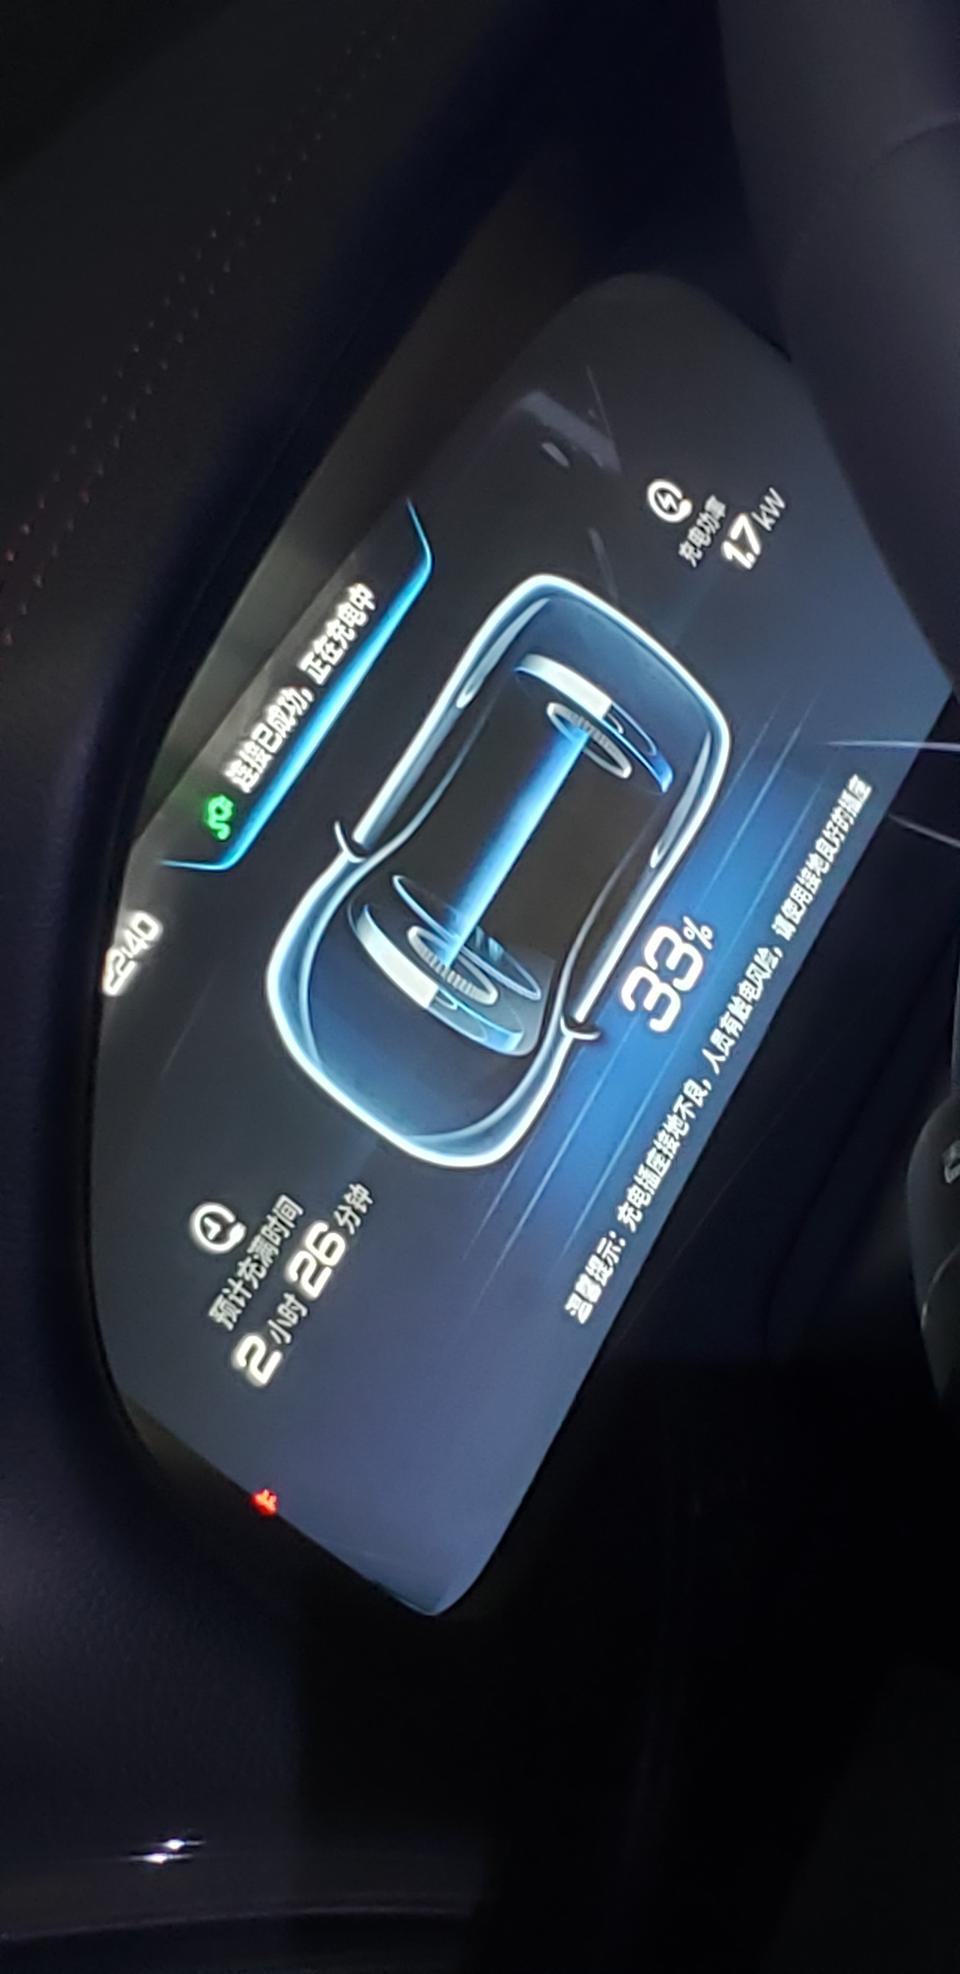 唐dm刚提车  1.7kw能冲这么快？  2799混动  空调插座充电的    这电池会不会是假的？